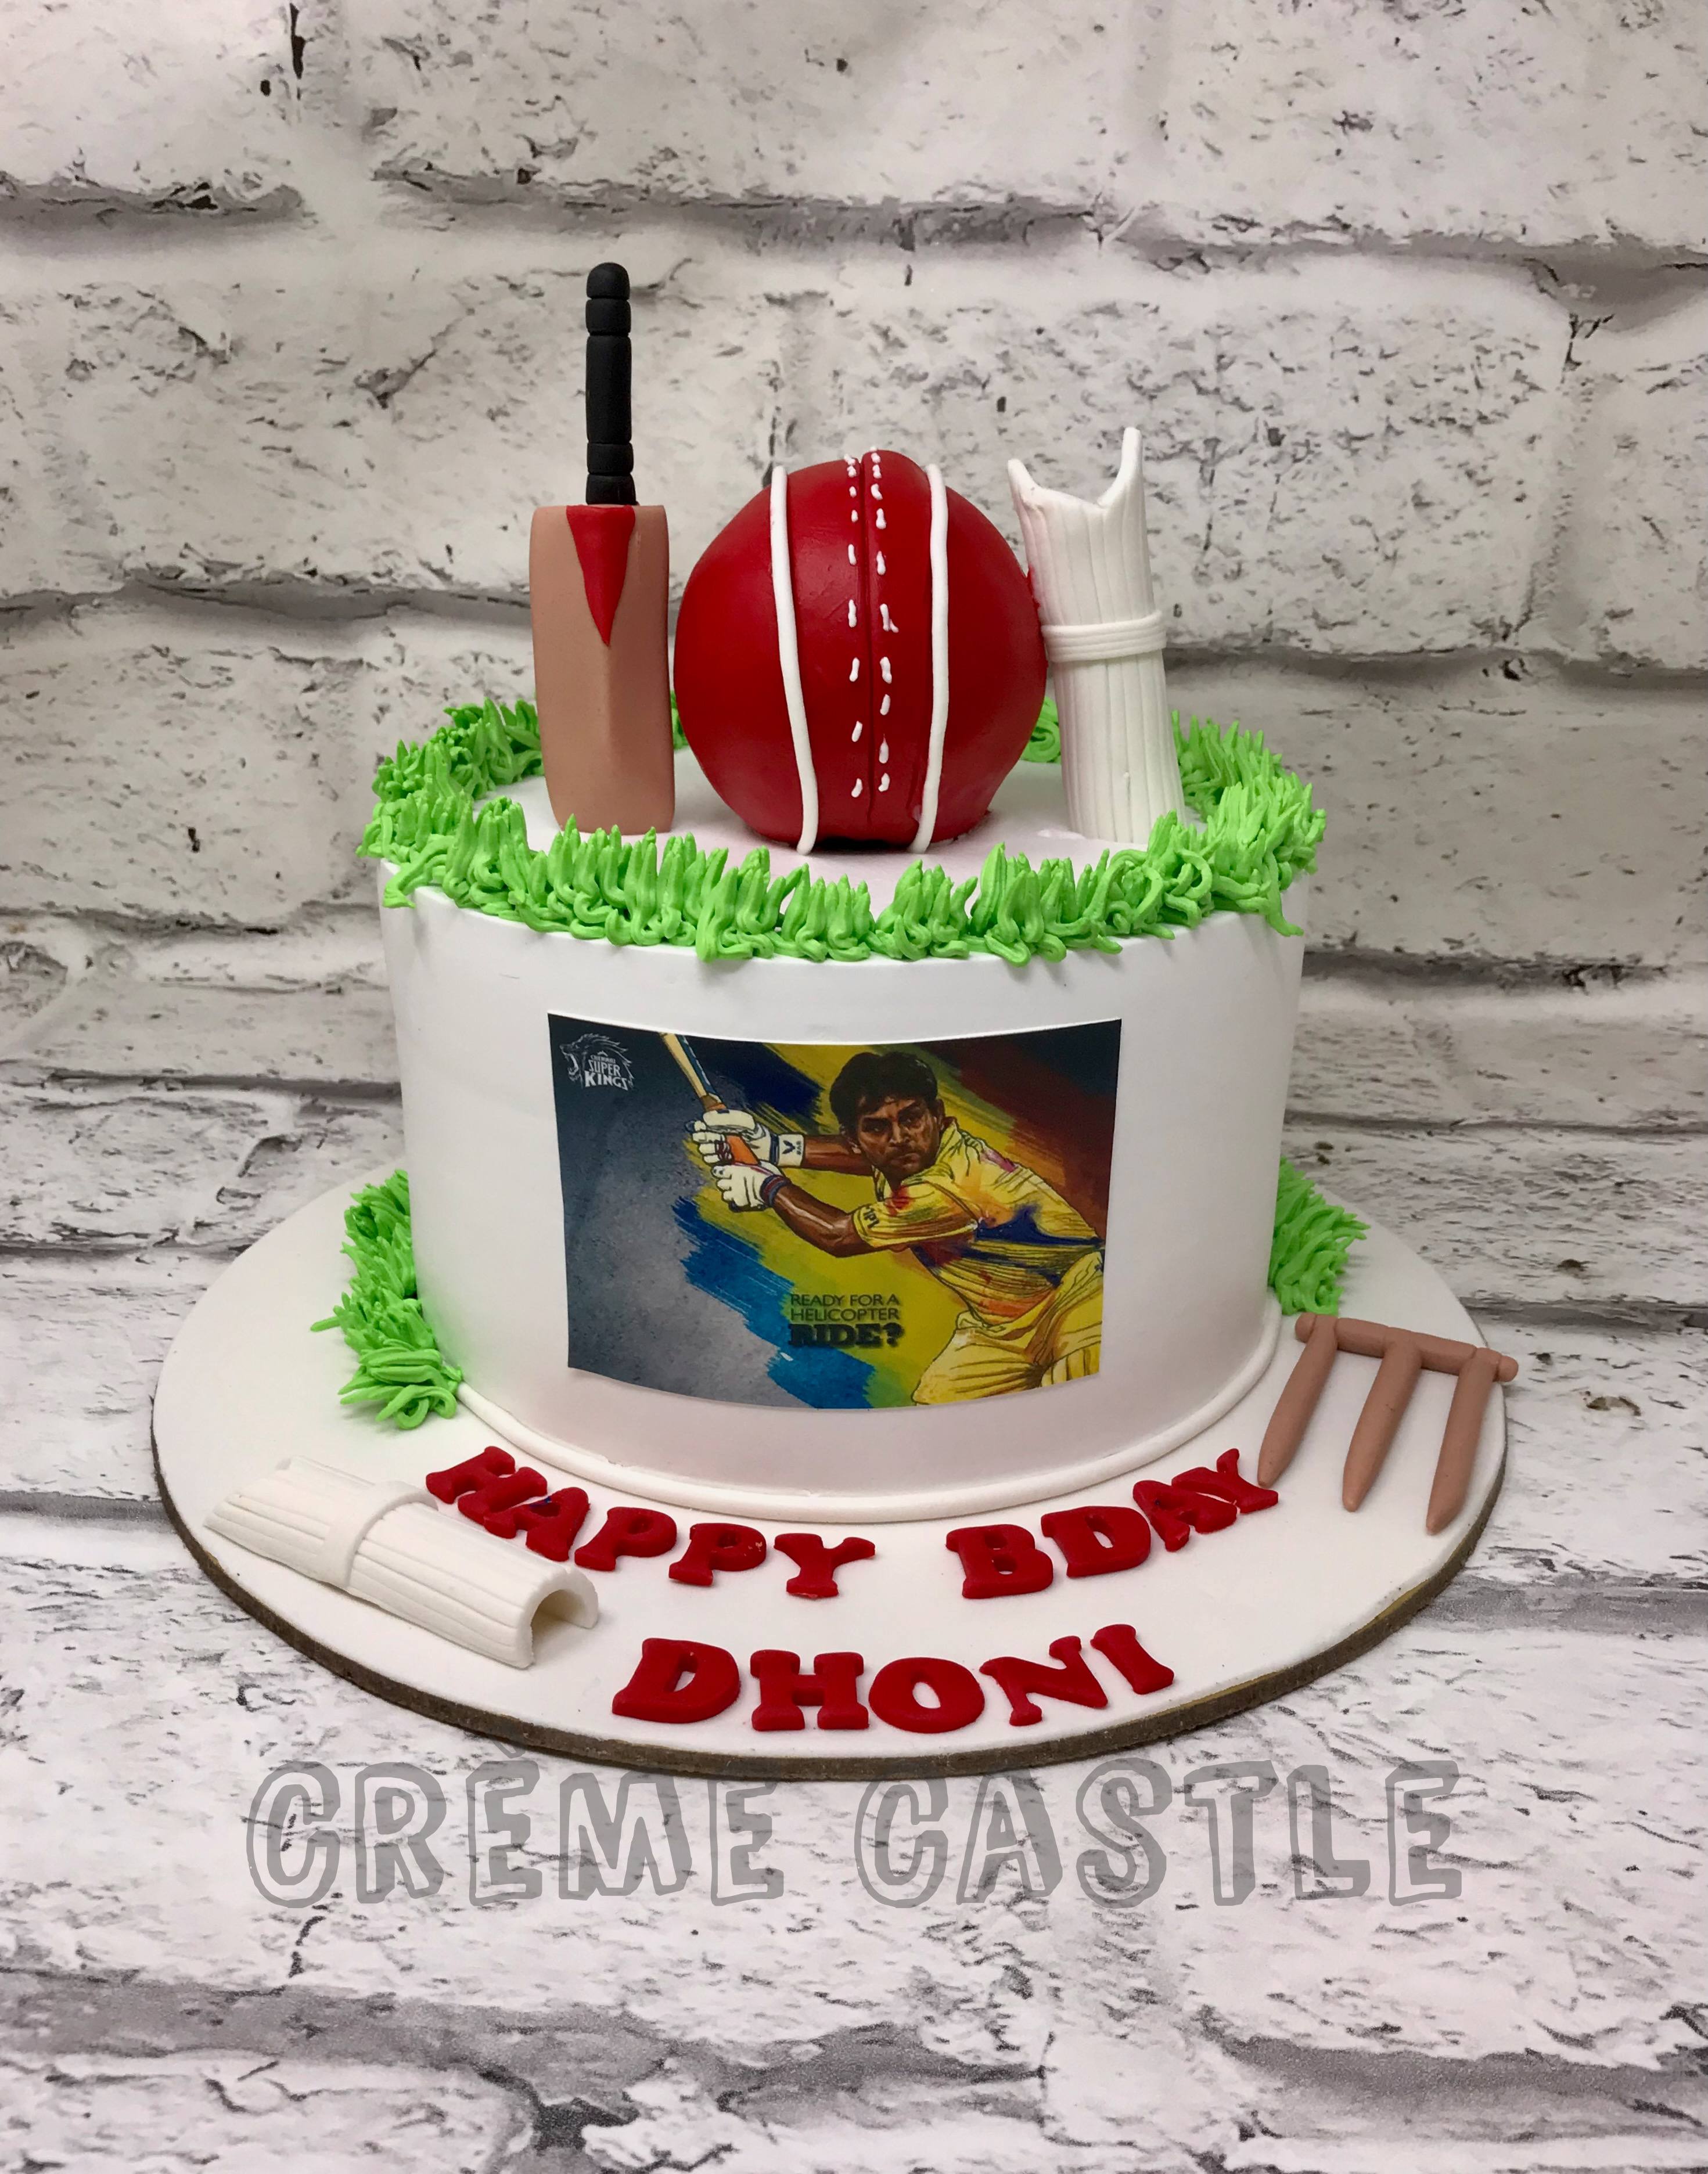 Cricket Theme Cake Decoration Ideas || Fondant Cricket Cake || Milons Cakes  😍😍 - YouTube